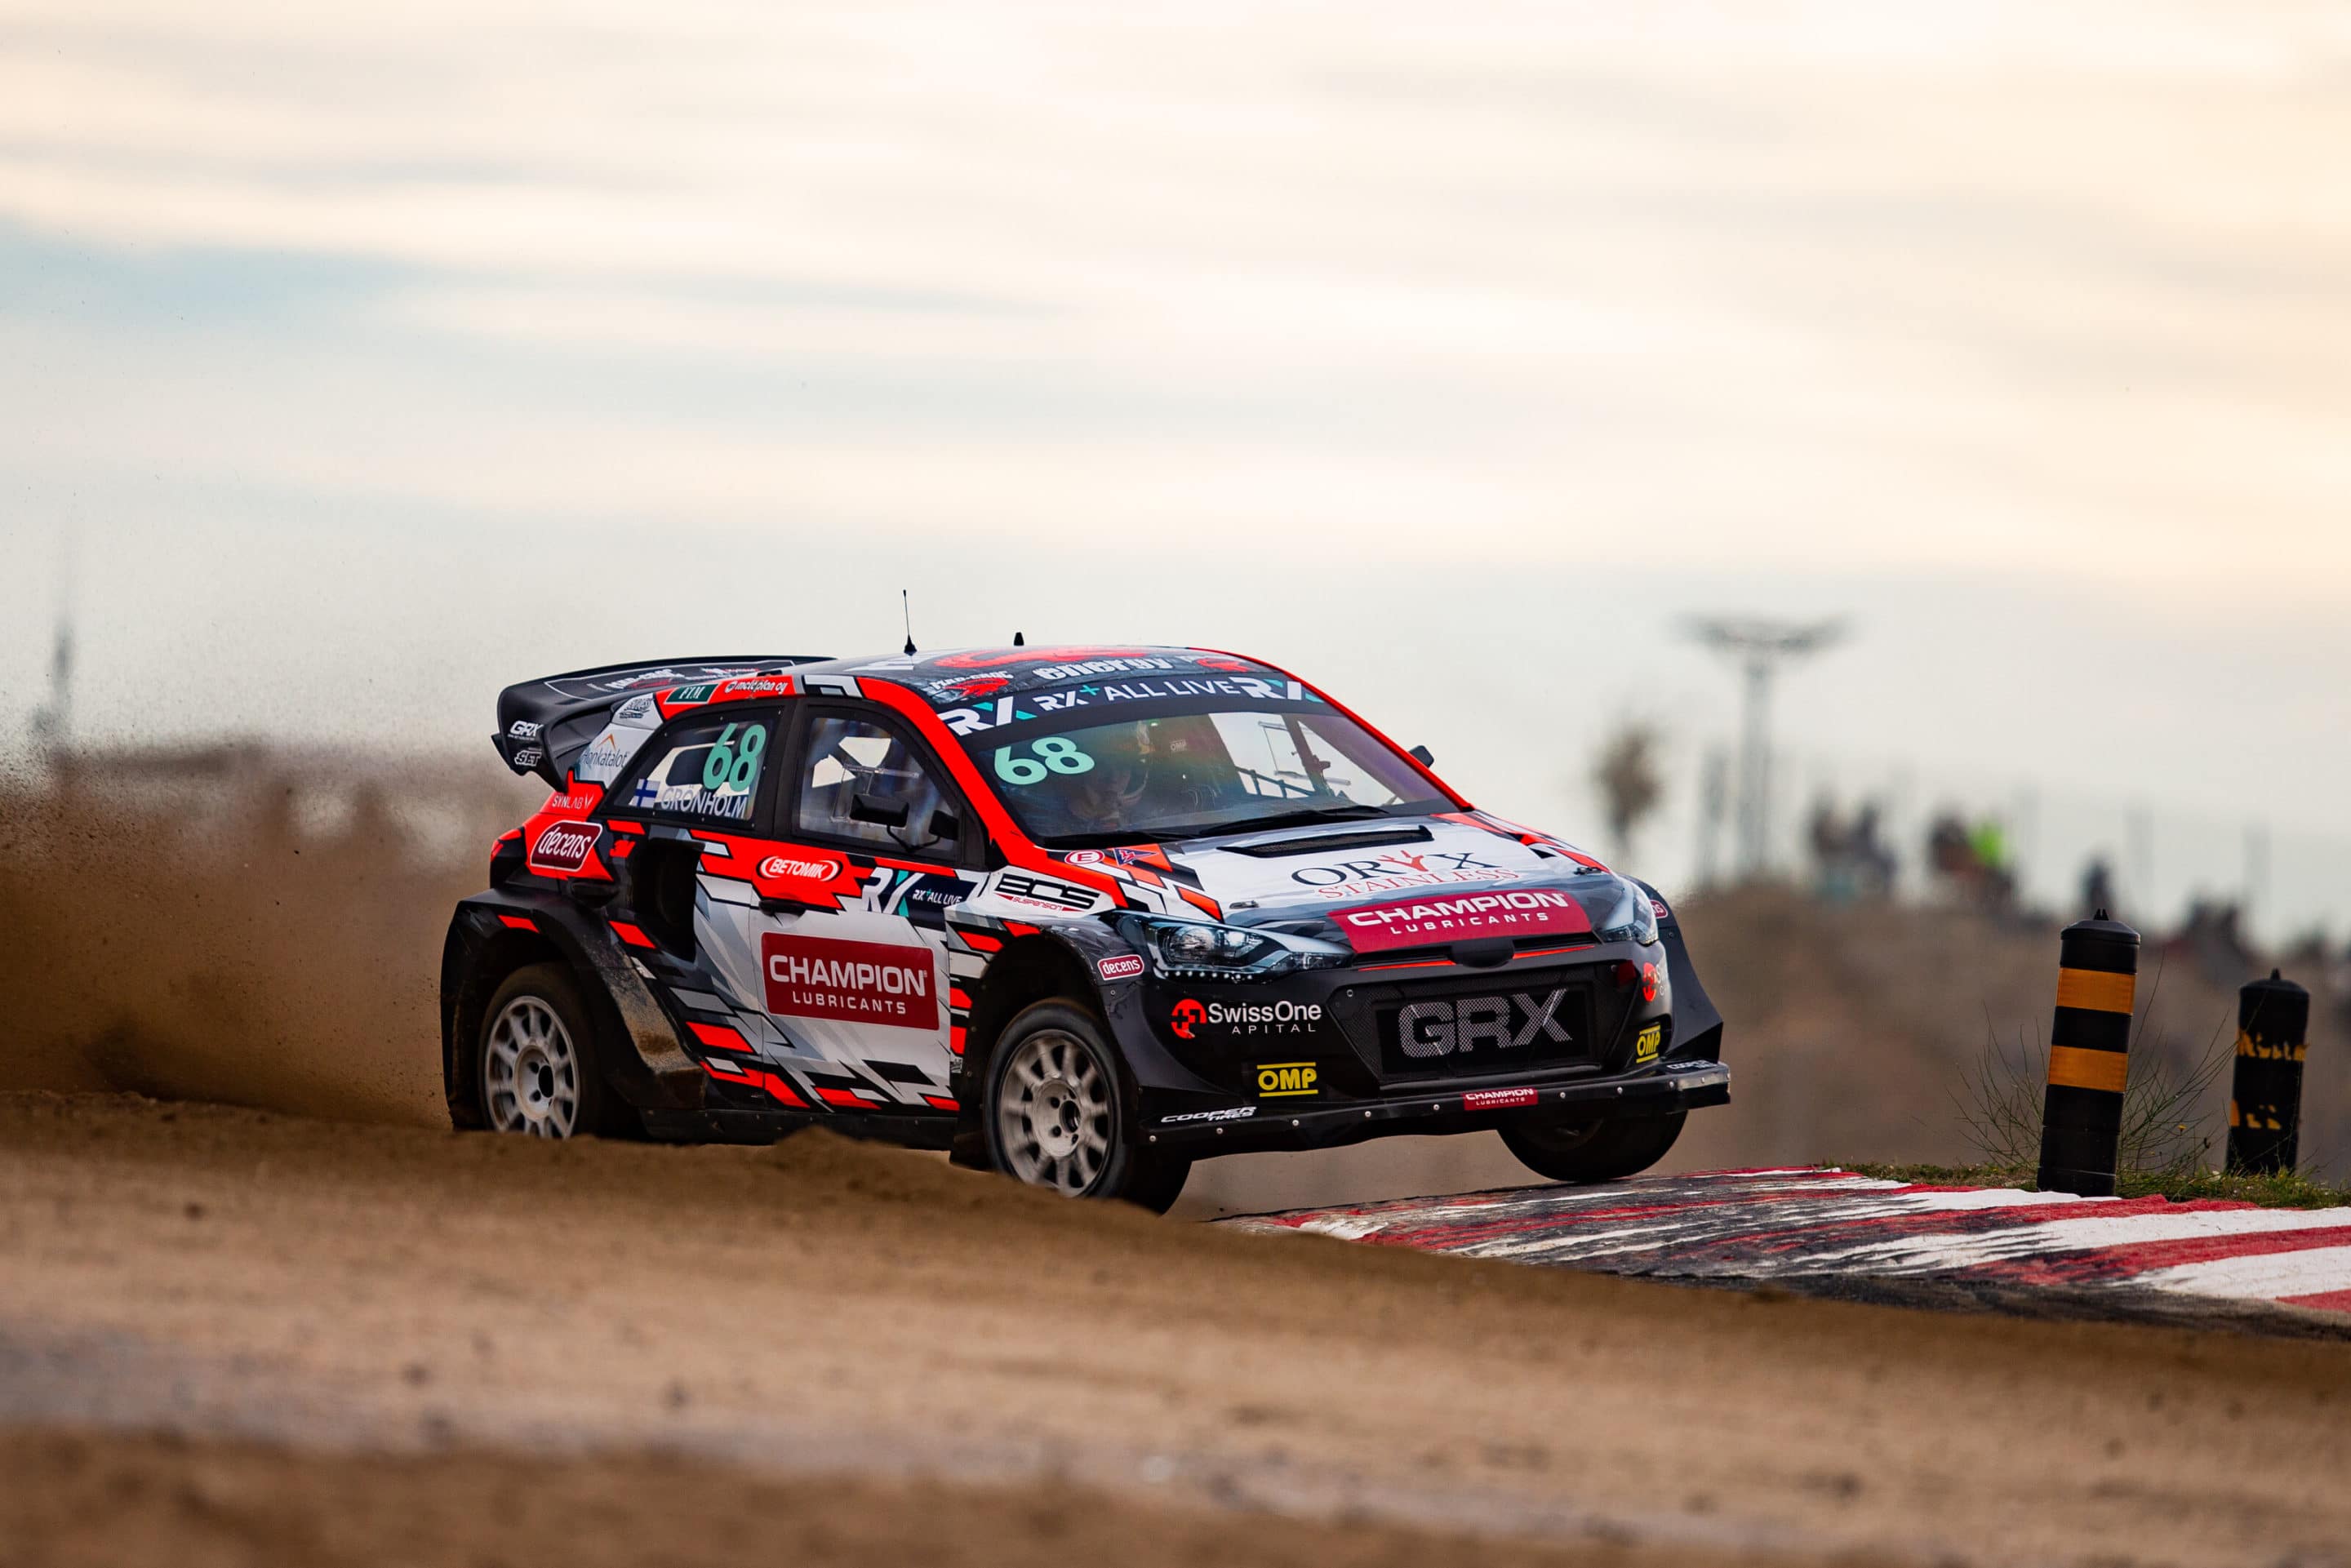 Niclas Grönholm aprovecha y gana el Rallycross de Portugal